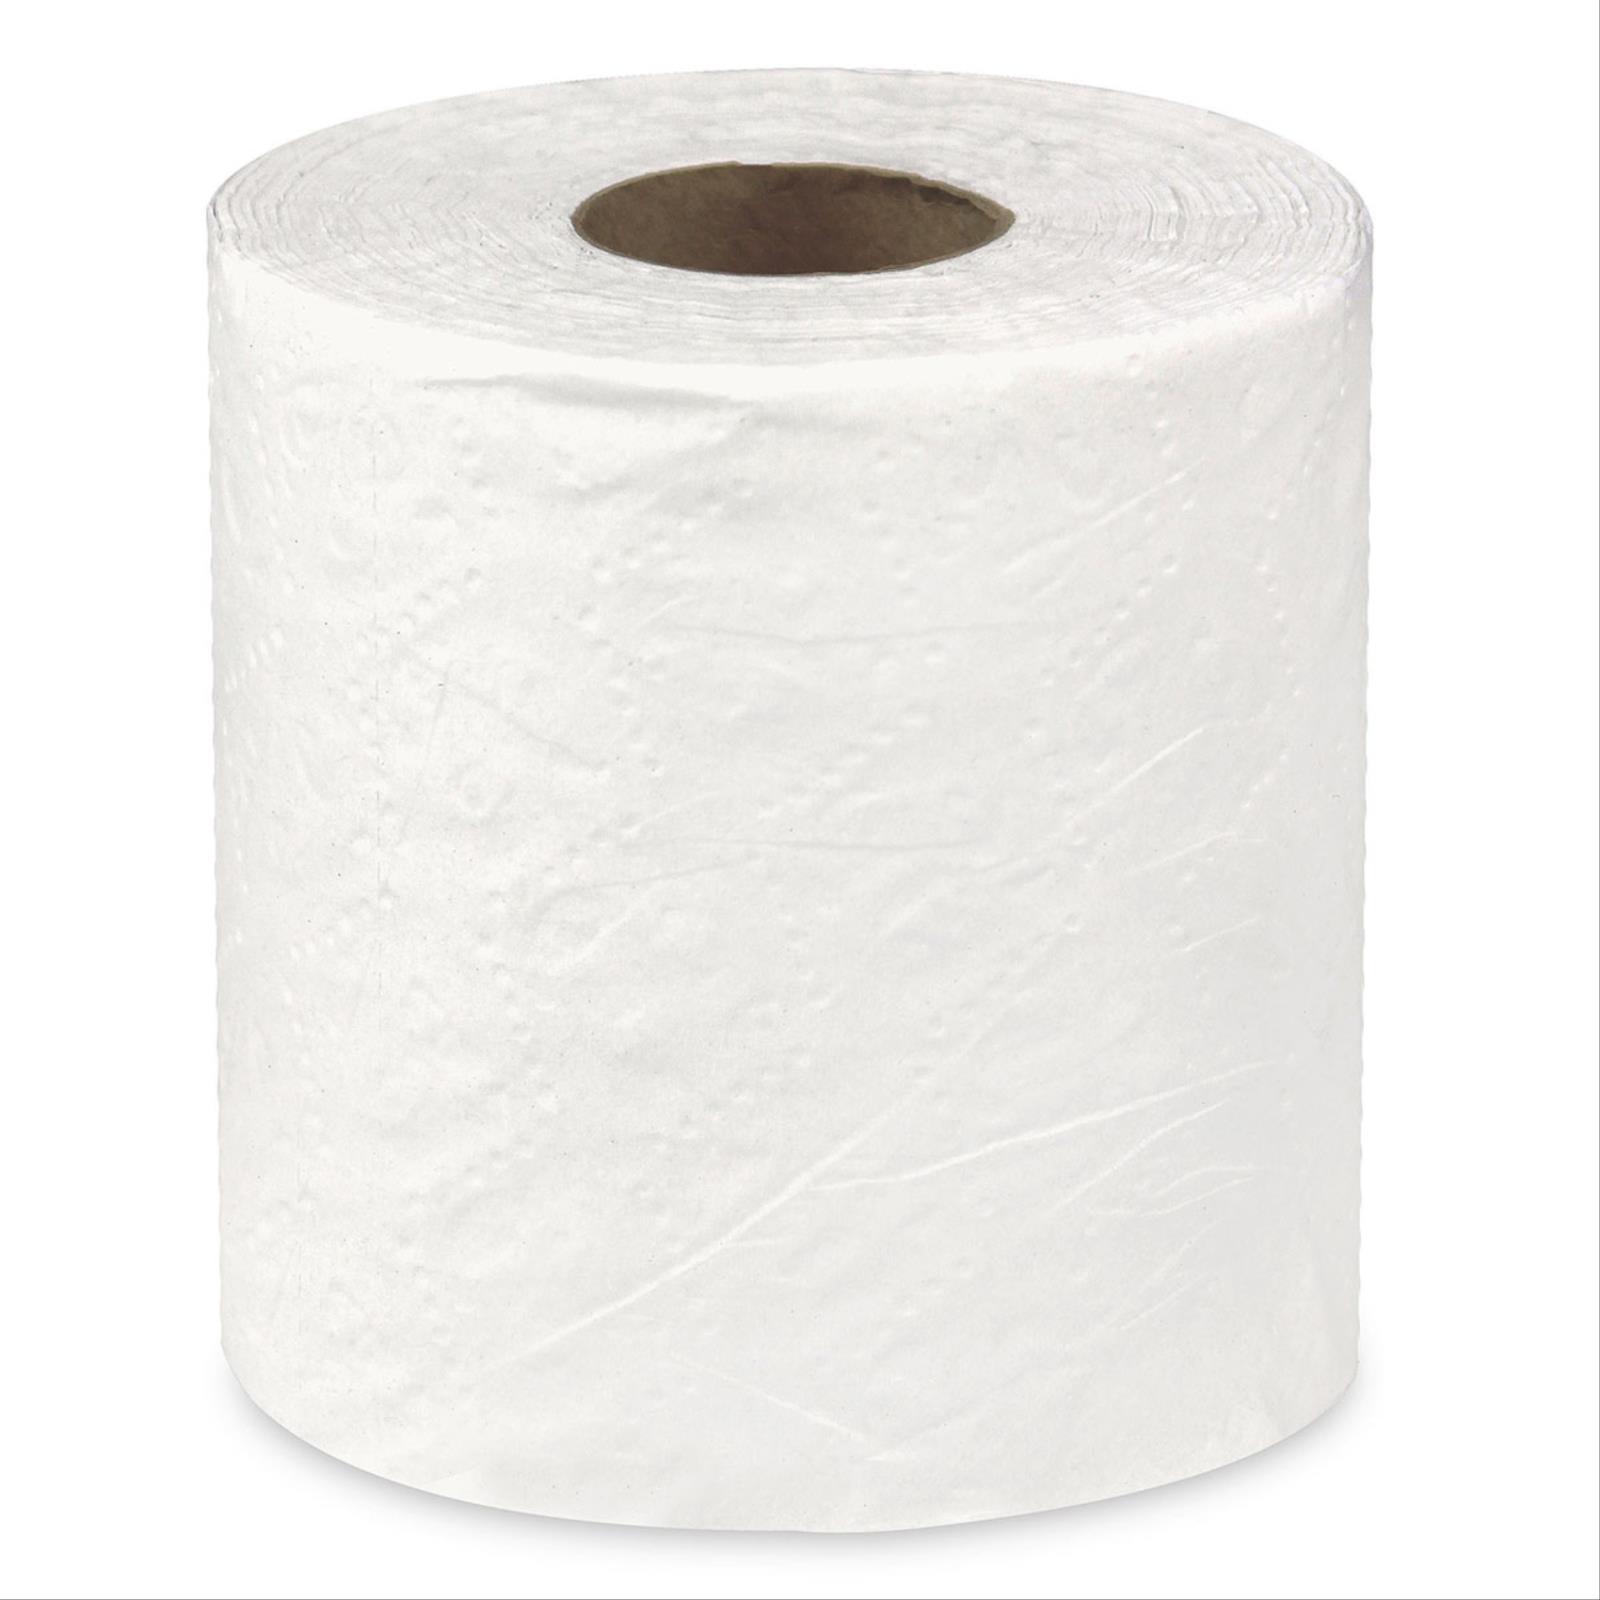 MAYFAIR® 2-Ply Bathroom Tissue